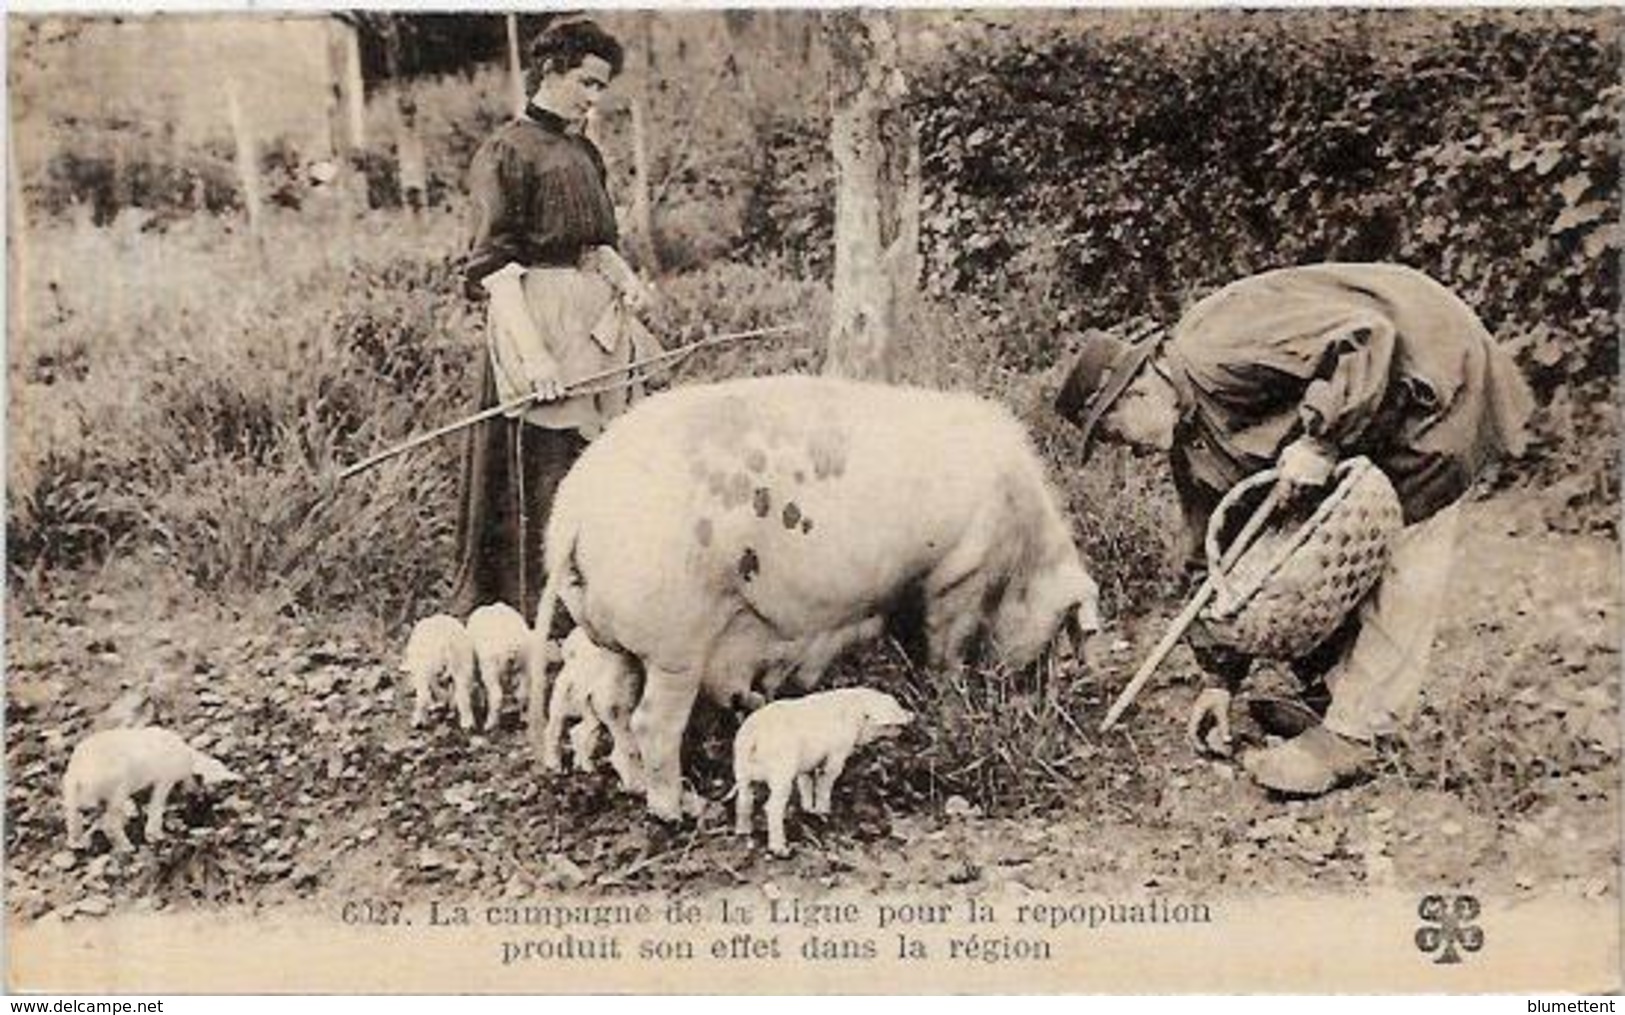 CPA Région Périgord Dordogne Cochon Truffier Pig Truffes Champignon Mushroom Métier Non Circulé - Autres